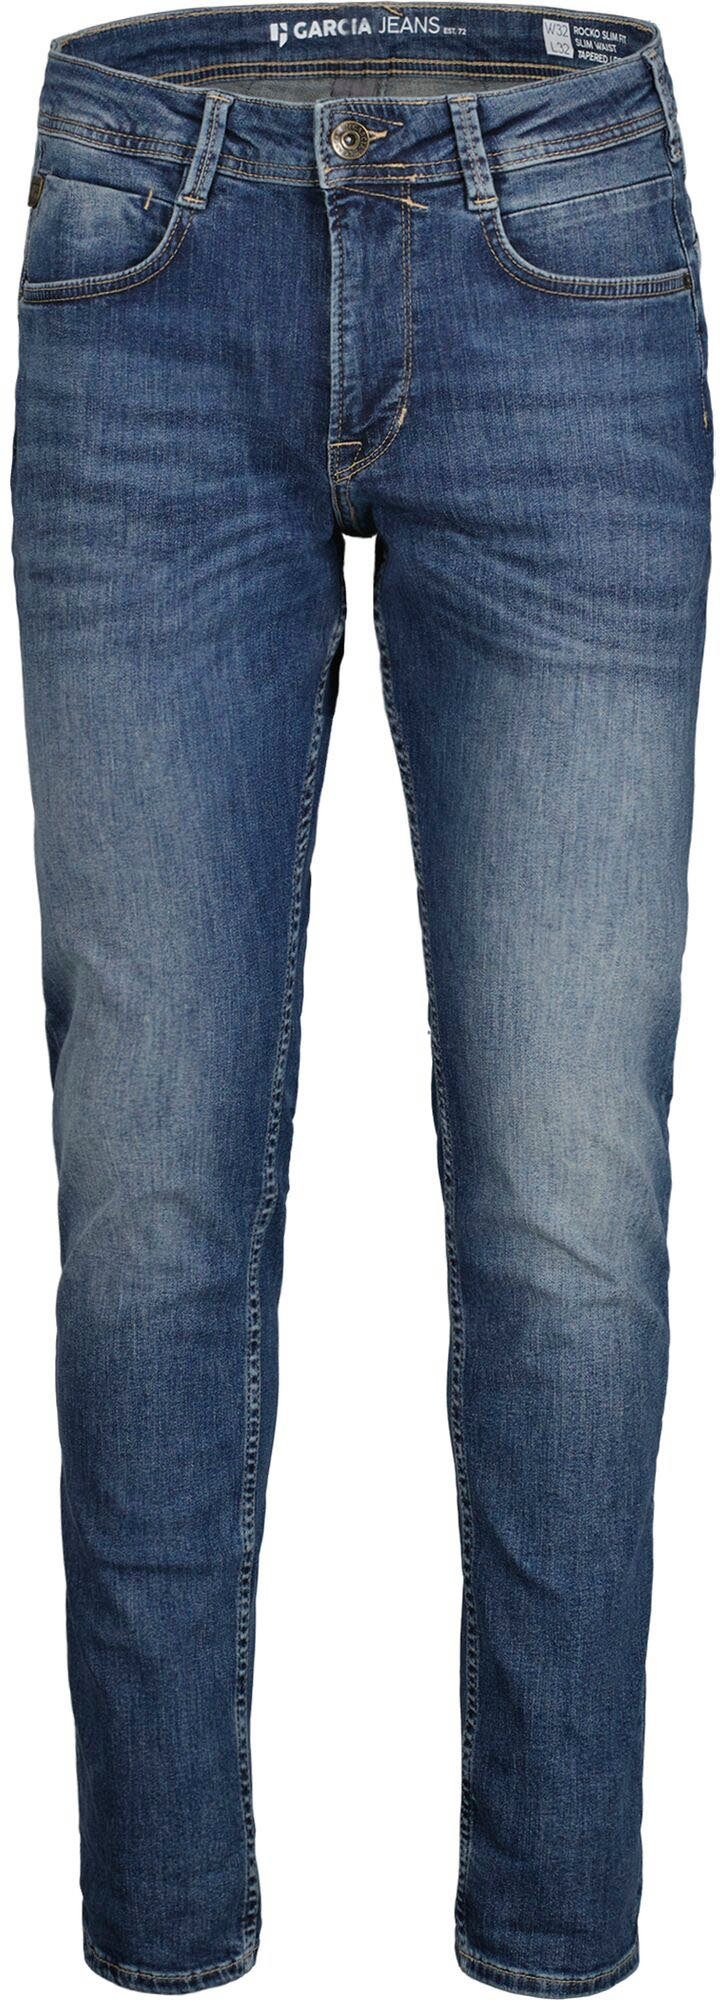 verschiedenen Rocko 5-Pocket-Jeans Garcia used in medium Waschungen